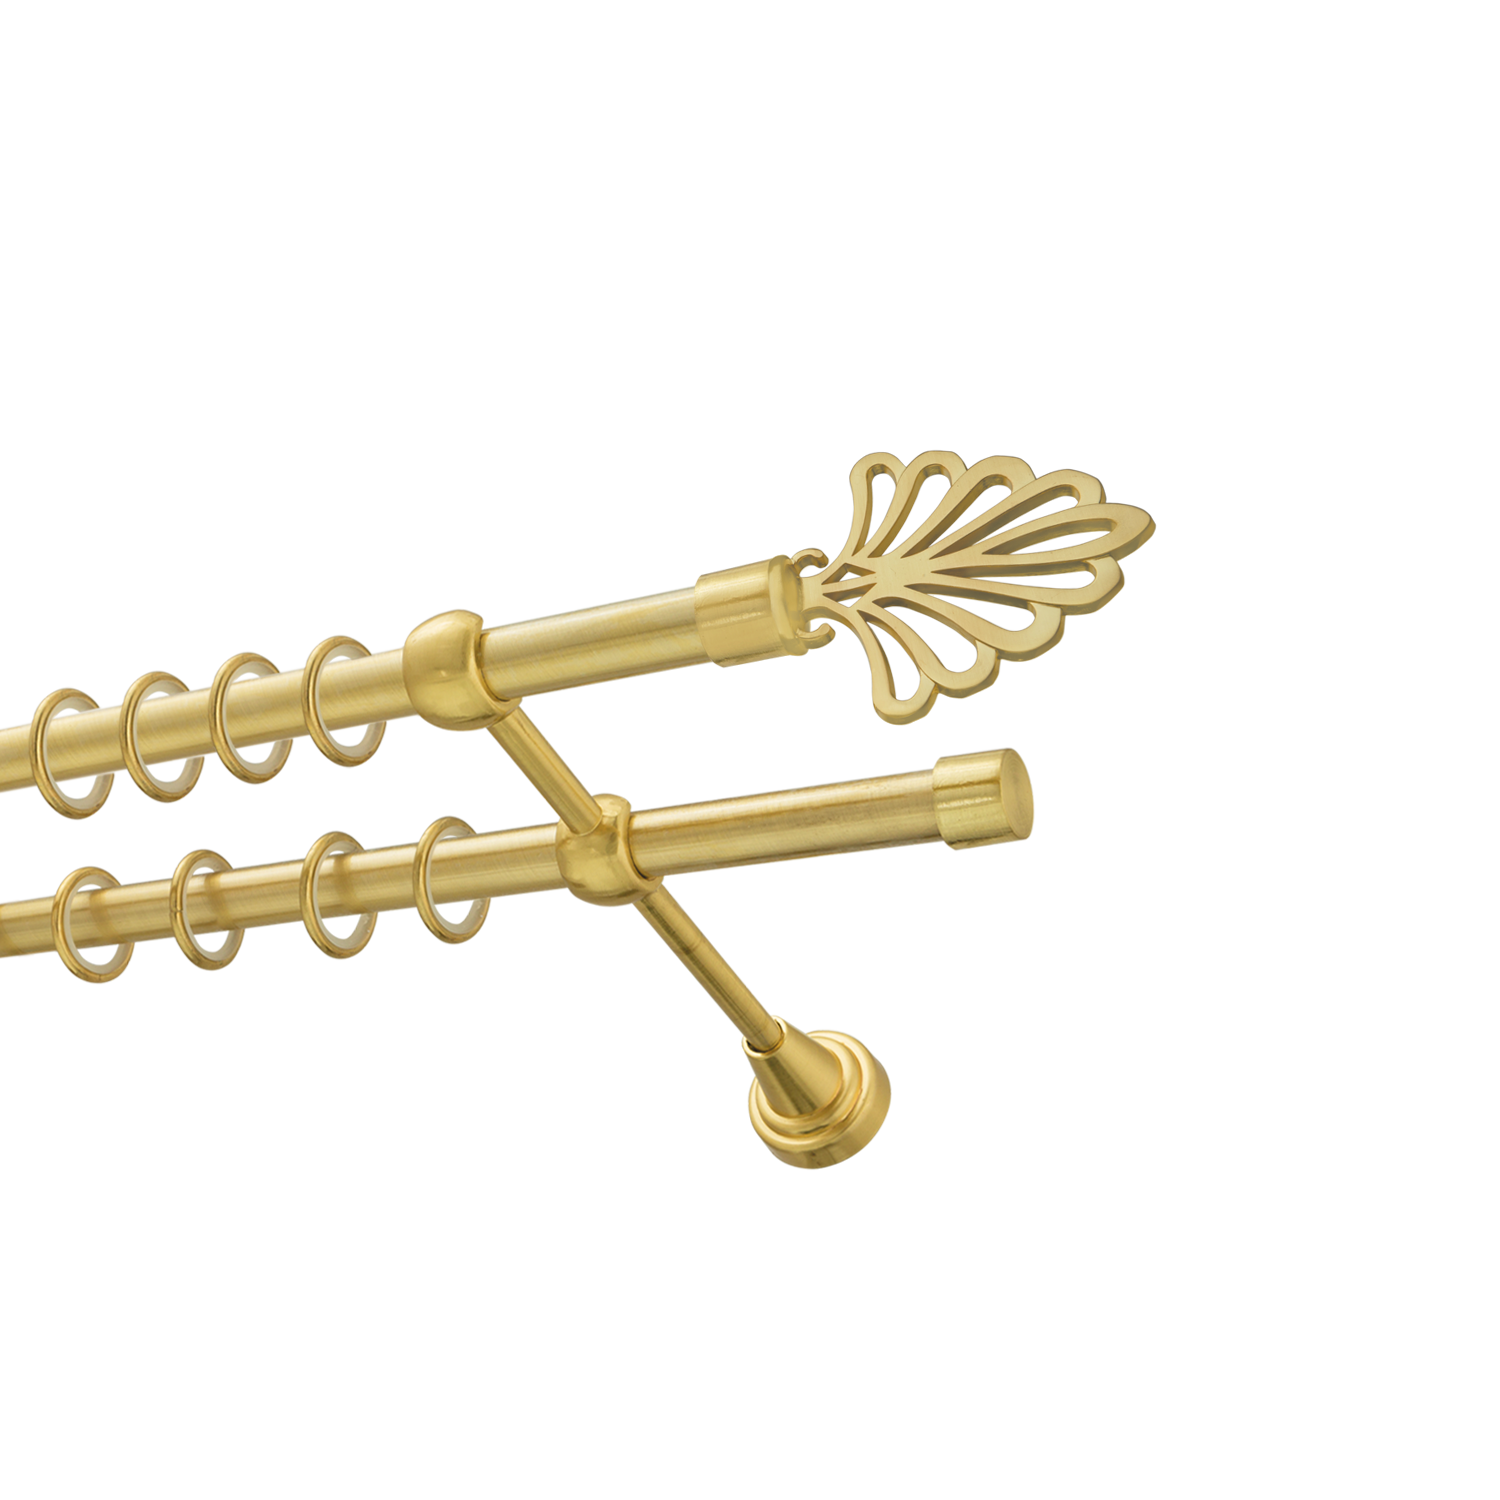 Металлический карниз для штор Бутик, двухрядный 16/16 мм, золото, гладкая штанга, длина 300 см - фото Wikidecor.ru